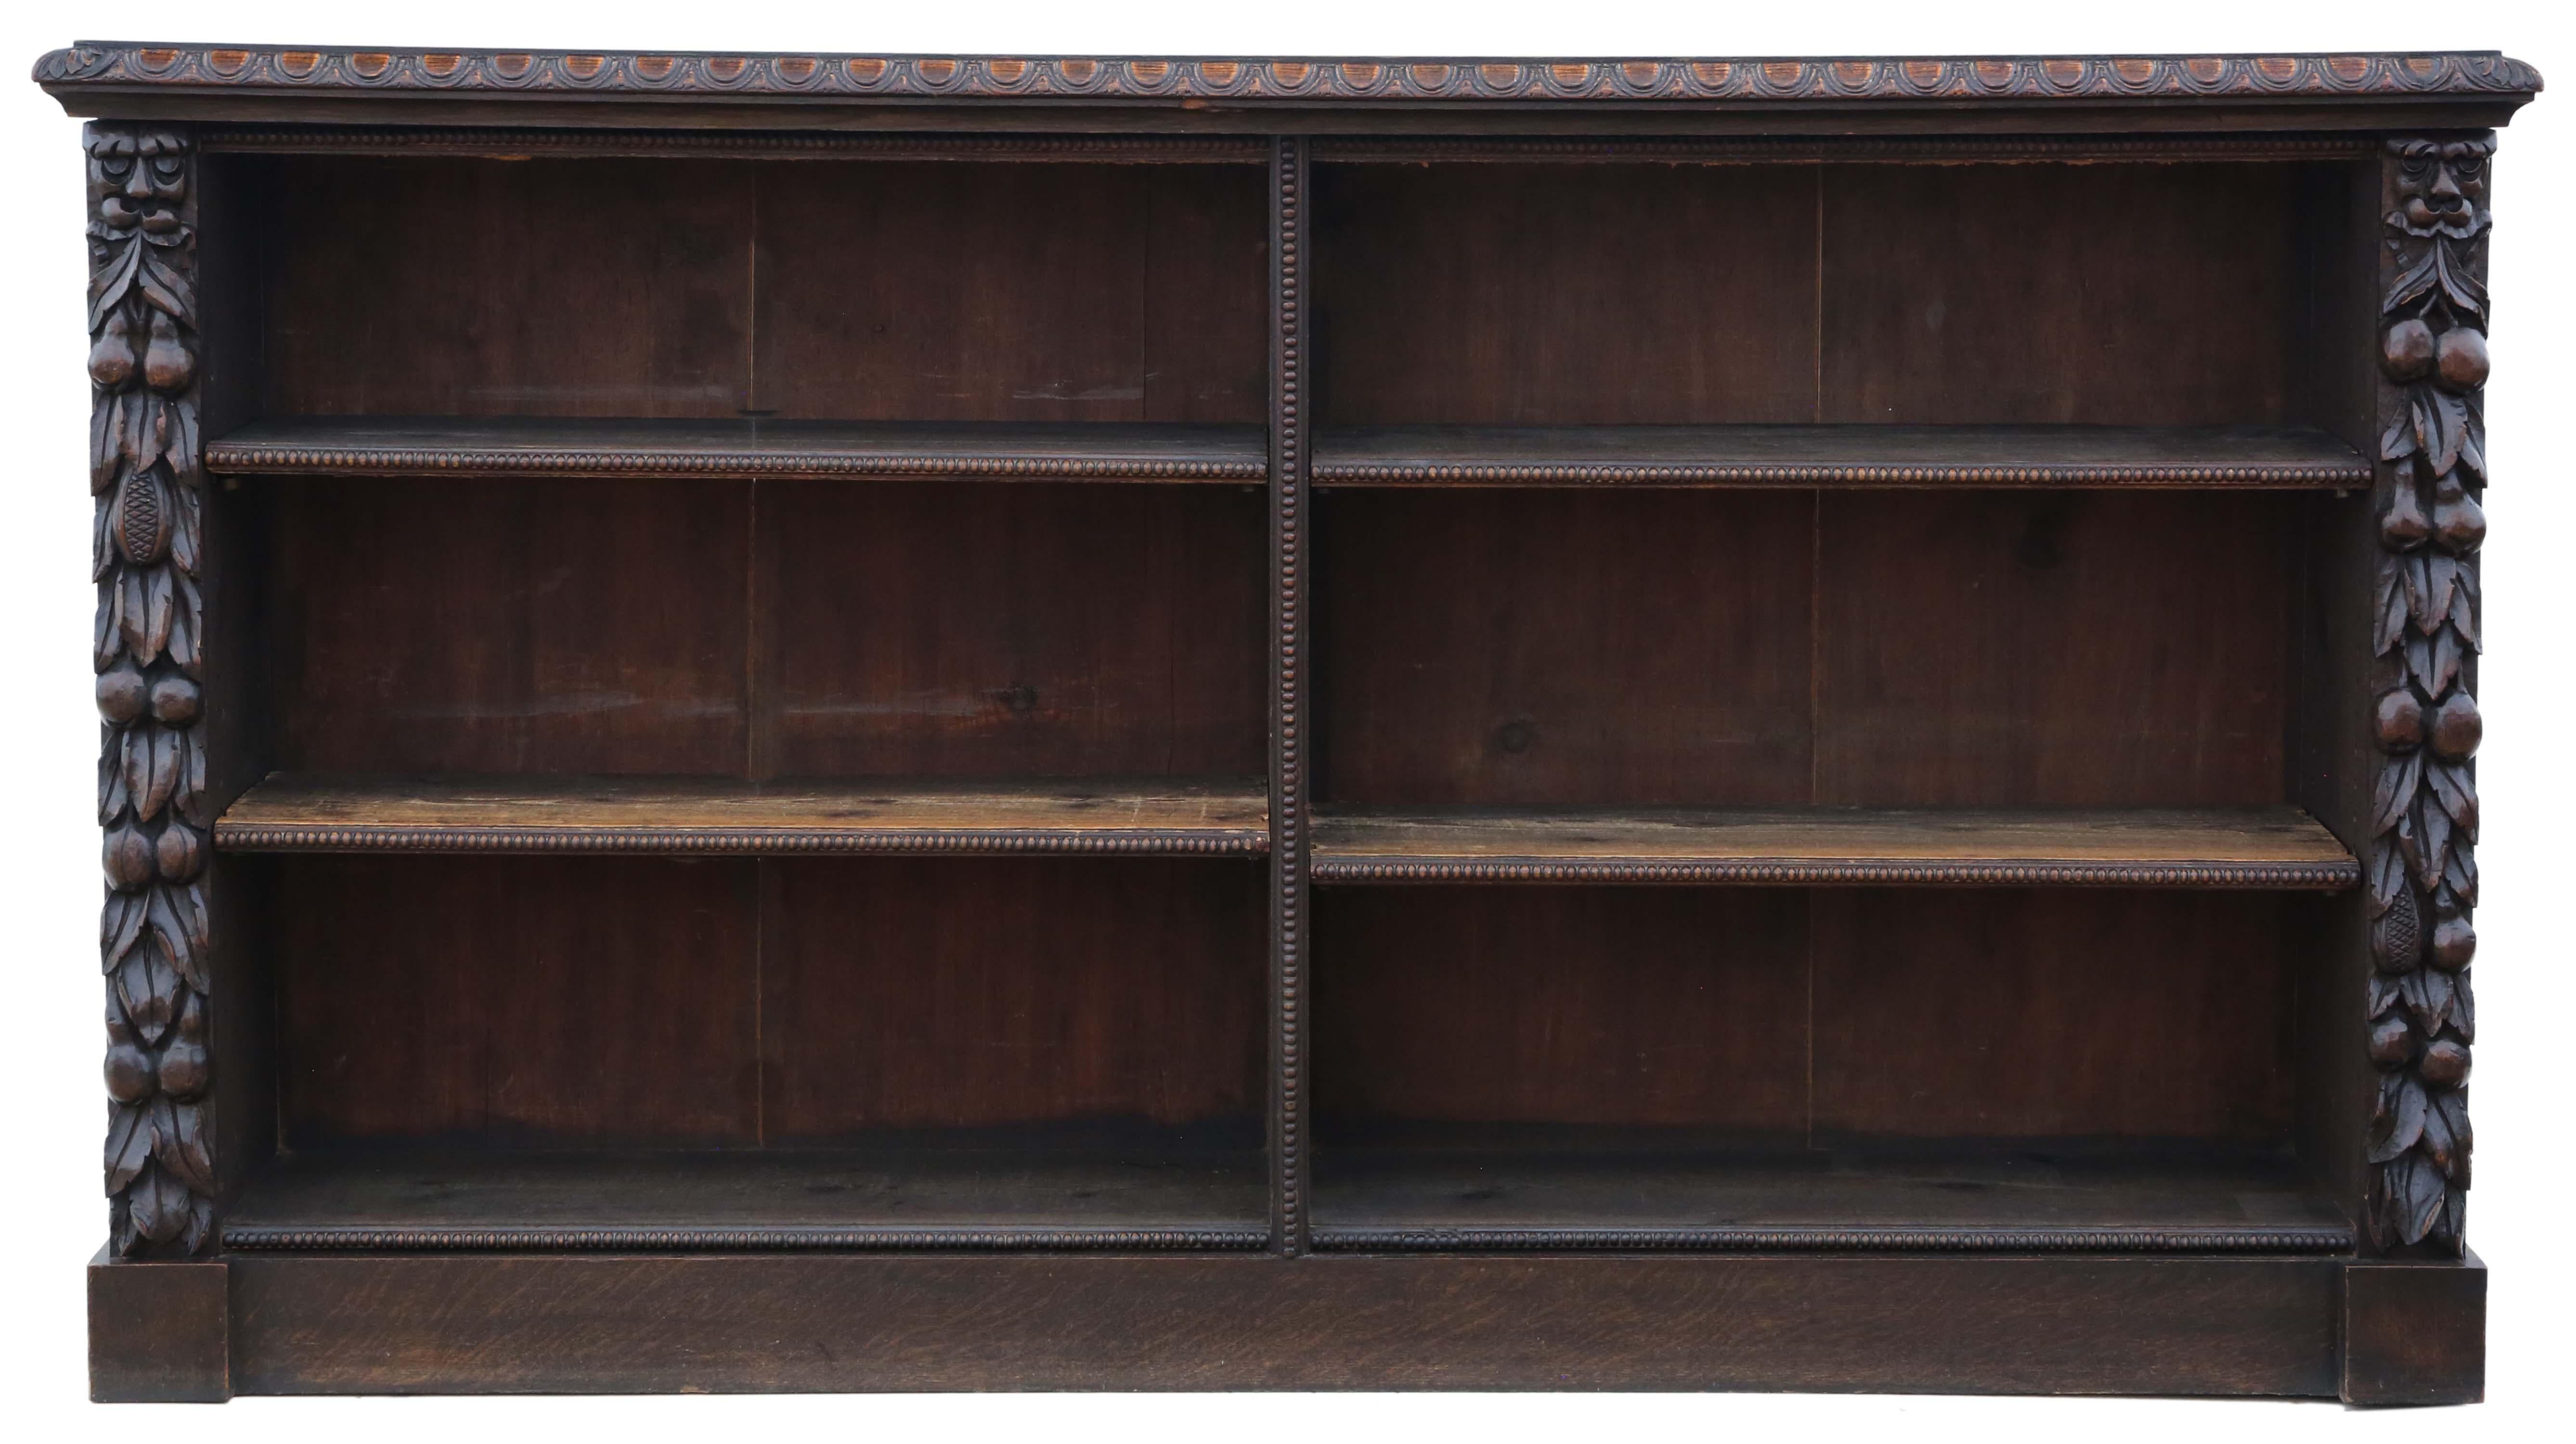 Antike große Qualität 19. Jahrhundert geschnitzt Eiche Bücherregal C1895.

Dies ist ein wunderschönes, hochwertiges Bücherregal, das voller Alter, Charme und Charakter ist.

Solide, ohne lose Verbindungen und ohne Holzwurm.

Die Regalböden werden